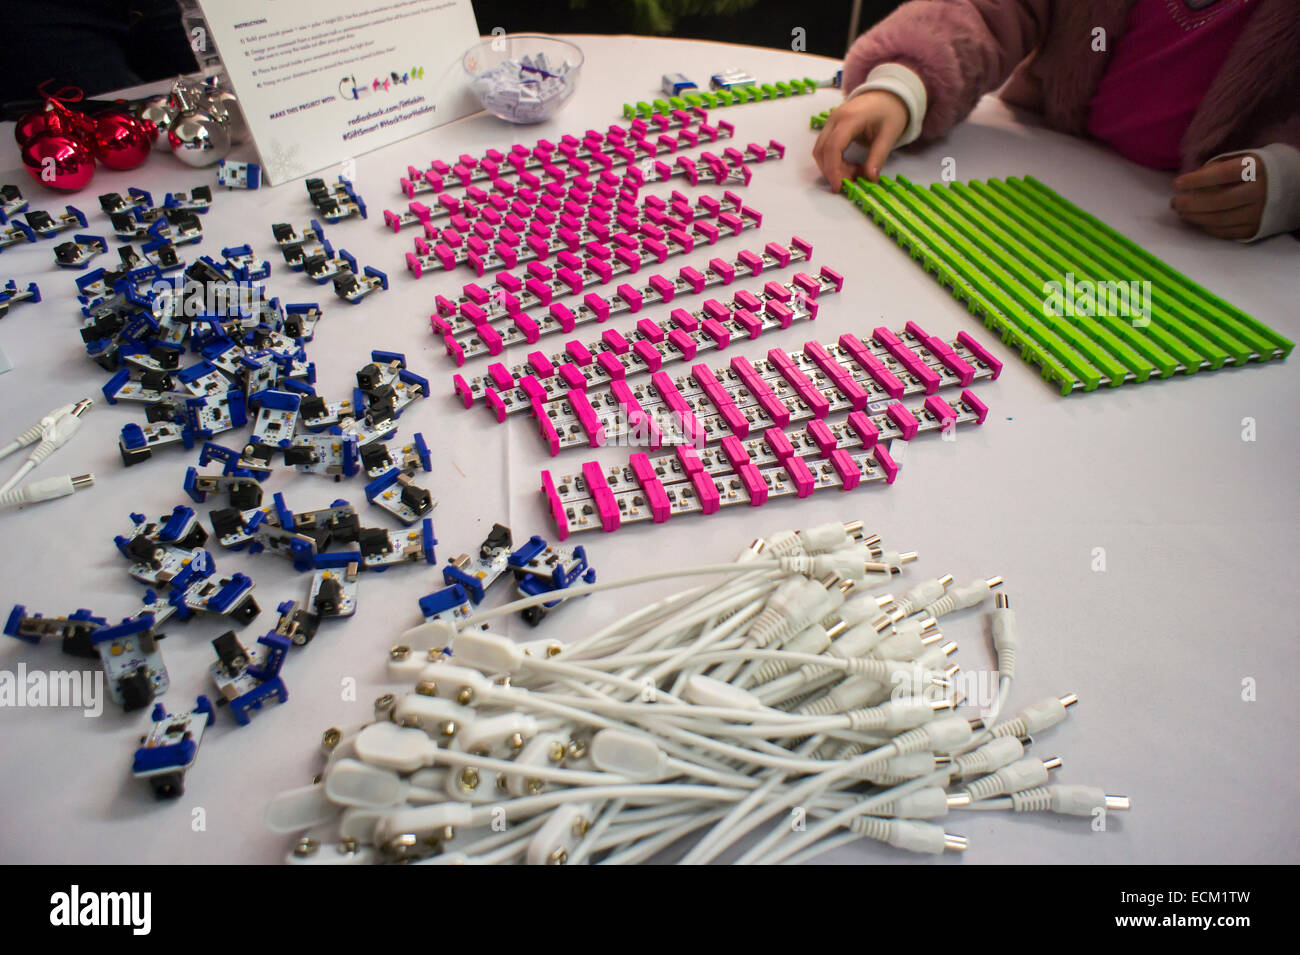 RadioShack patrocina una demostración de tecnología LittleBits en un evento en Nueva York el sábado, 13 de diciembre de 2014. El minorista se unió con LittleBits para promover la empresa kits de bricolaje que le permiten automatizar su hogar gadgets para conectarse a la "Internet de las cosas" (IoT). Varios módulos se conectan entre sí para convertir sus aparatos analógicos en nube de dispositivos inteligentes conectados. RadioShack vende los dispositivos esperando revitalizarse como el lugar para DIY tech geeks. (© Richard B. Levine) Foto de stock